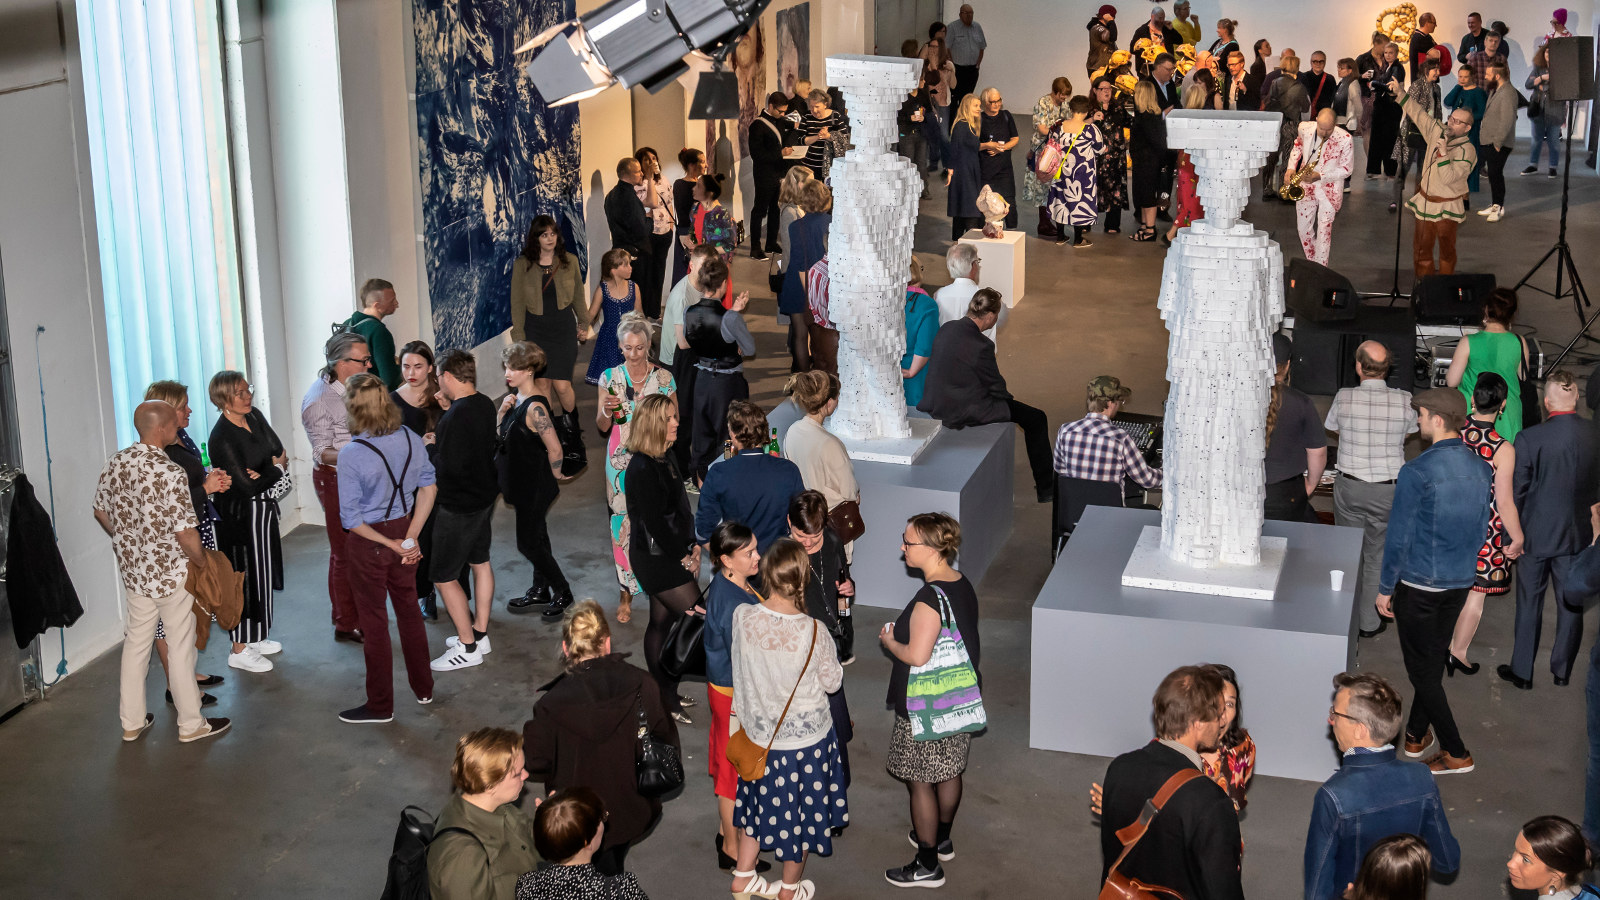 Kuvassa on ylhäältä päin kuvattu yleisöä Pekilossa Mäntässä.  Yleisöä on koko salin alalla pienissä ryhmissä keskustelemassa.  Salissa on valkoisia isoja patsaita.